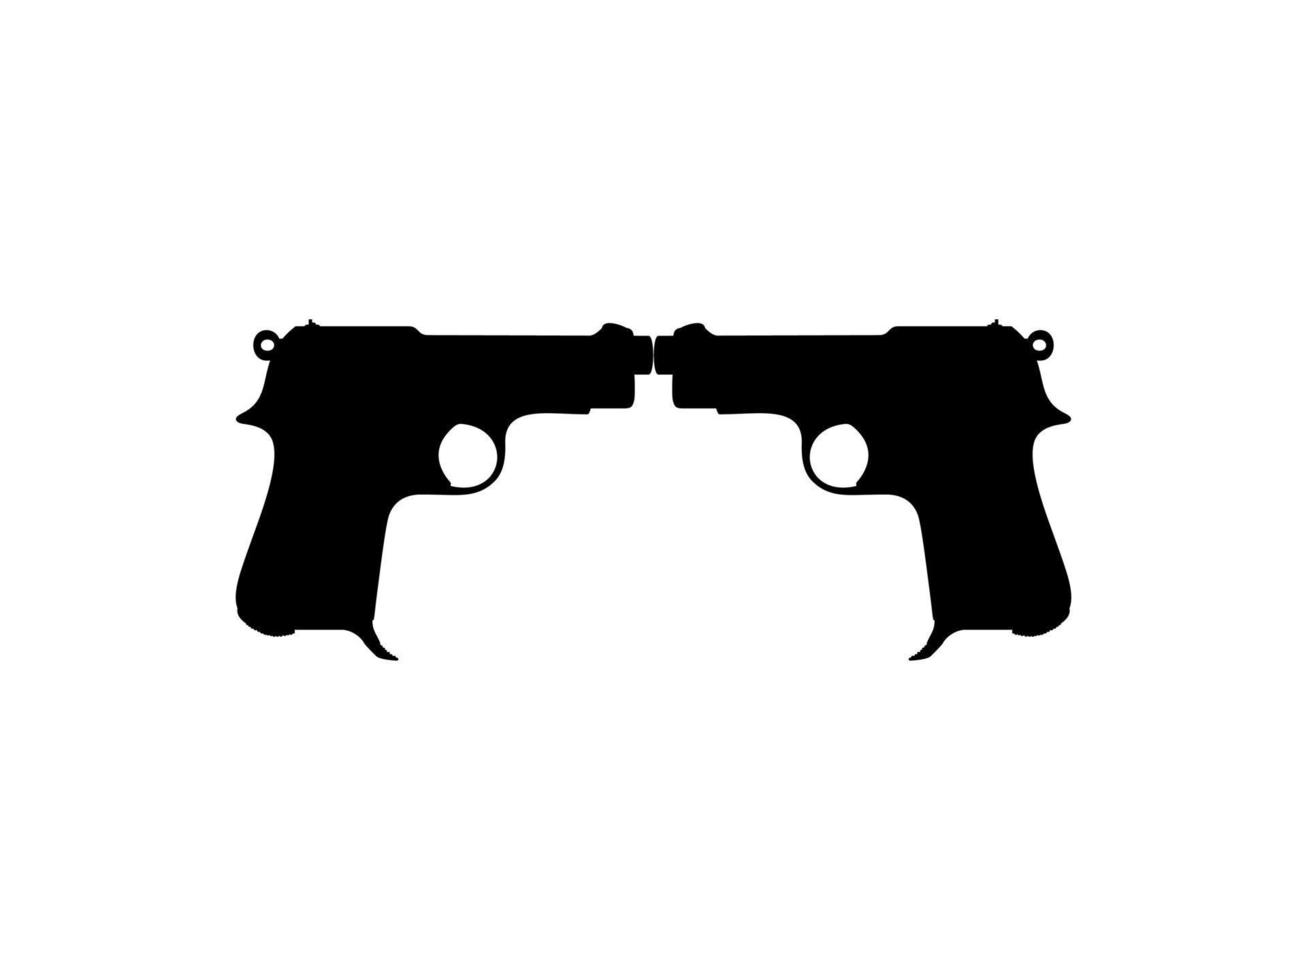 silueta de pistola para logotipo, pictograma, sitio web o elemento de diseño gráfico. ilustración vectorial vector